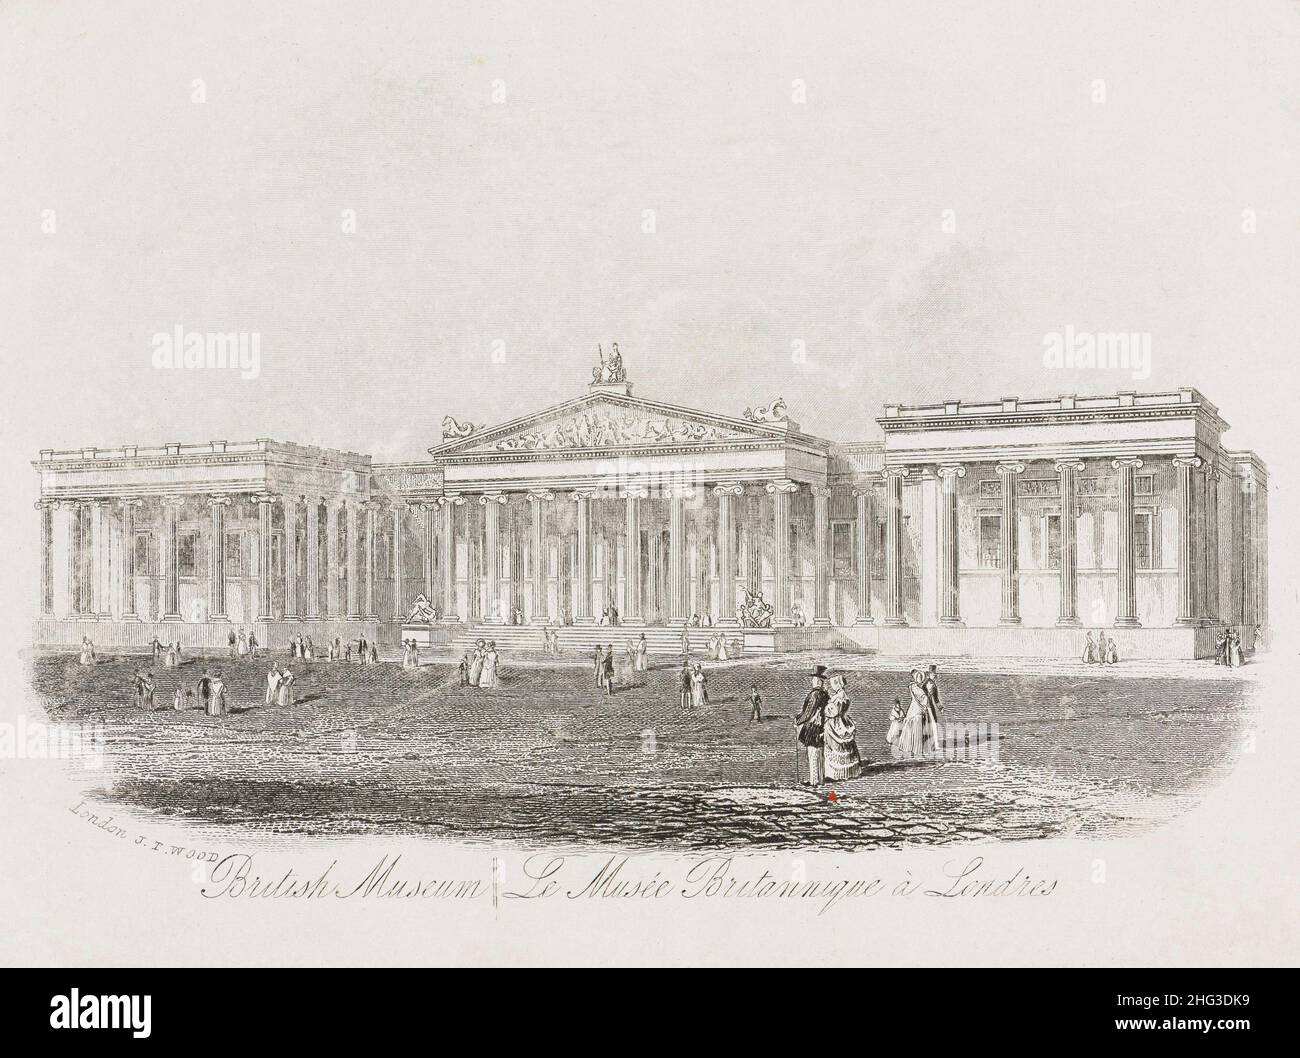 Incisione del British Museum a Londra. 1862 il British Museum è un'istituzione pubblica dedicata alla storia, all'arte e alla cultura umana situata nel Bloo Foto Stock